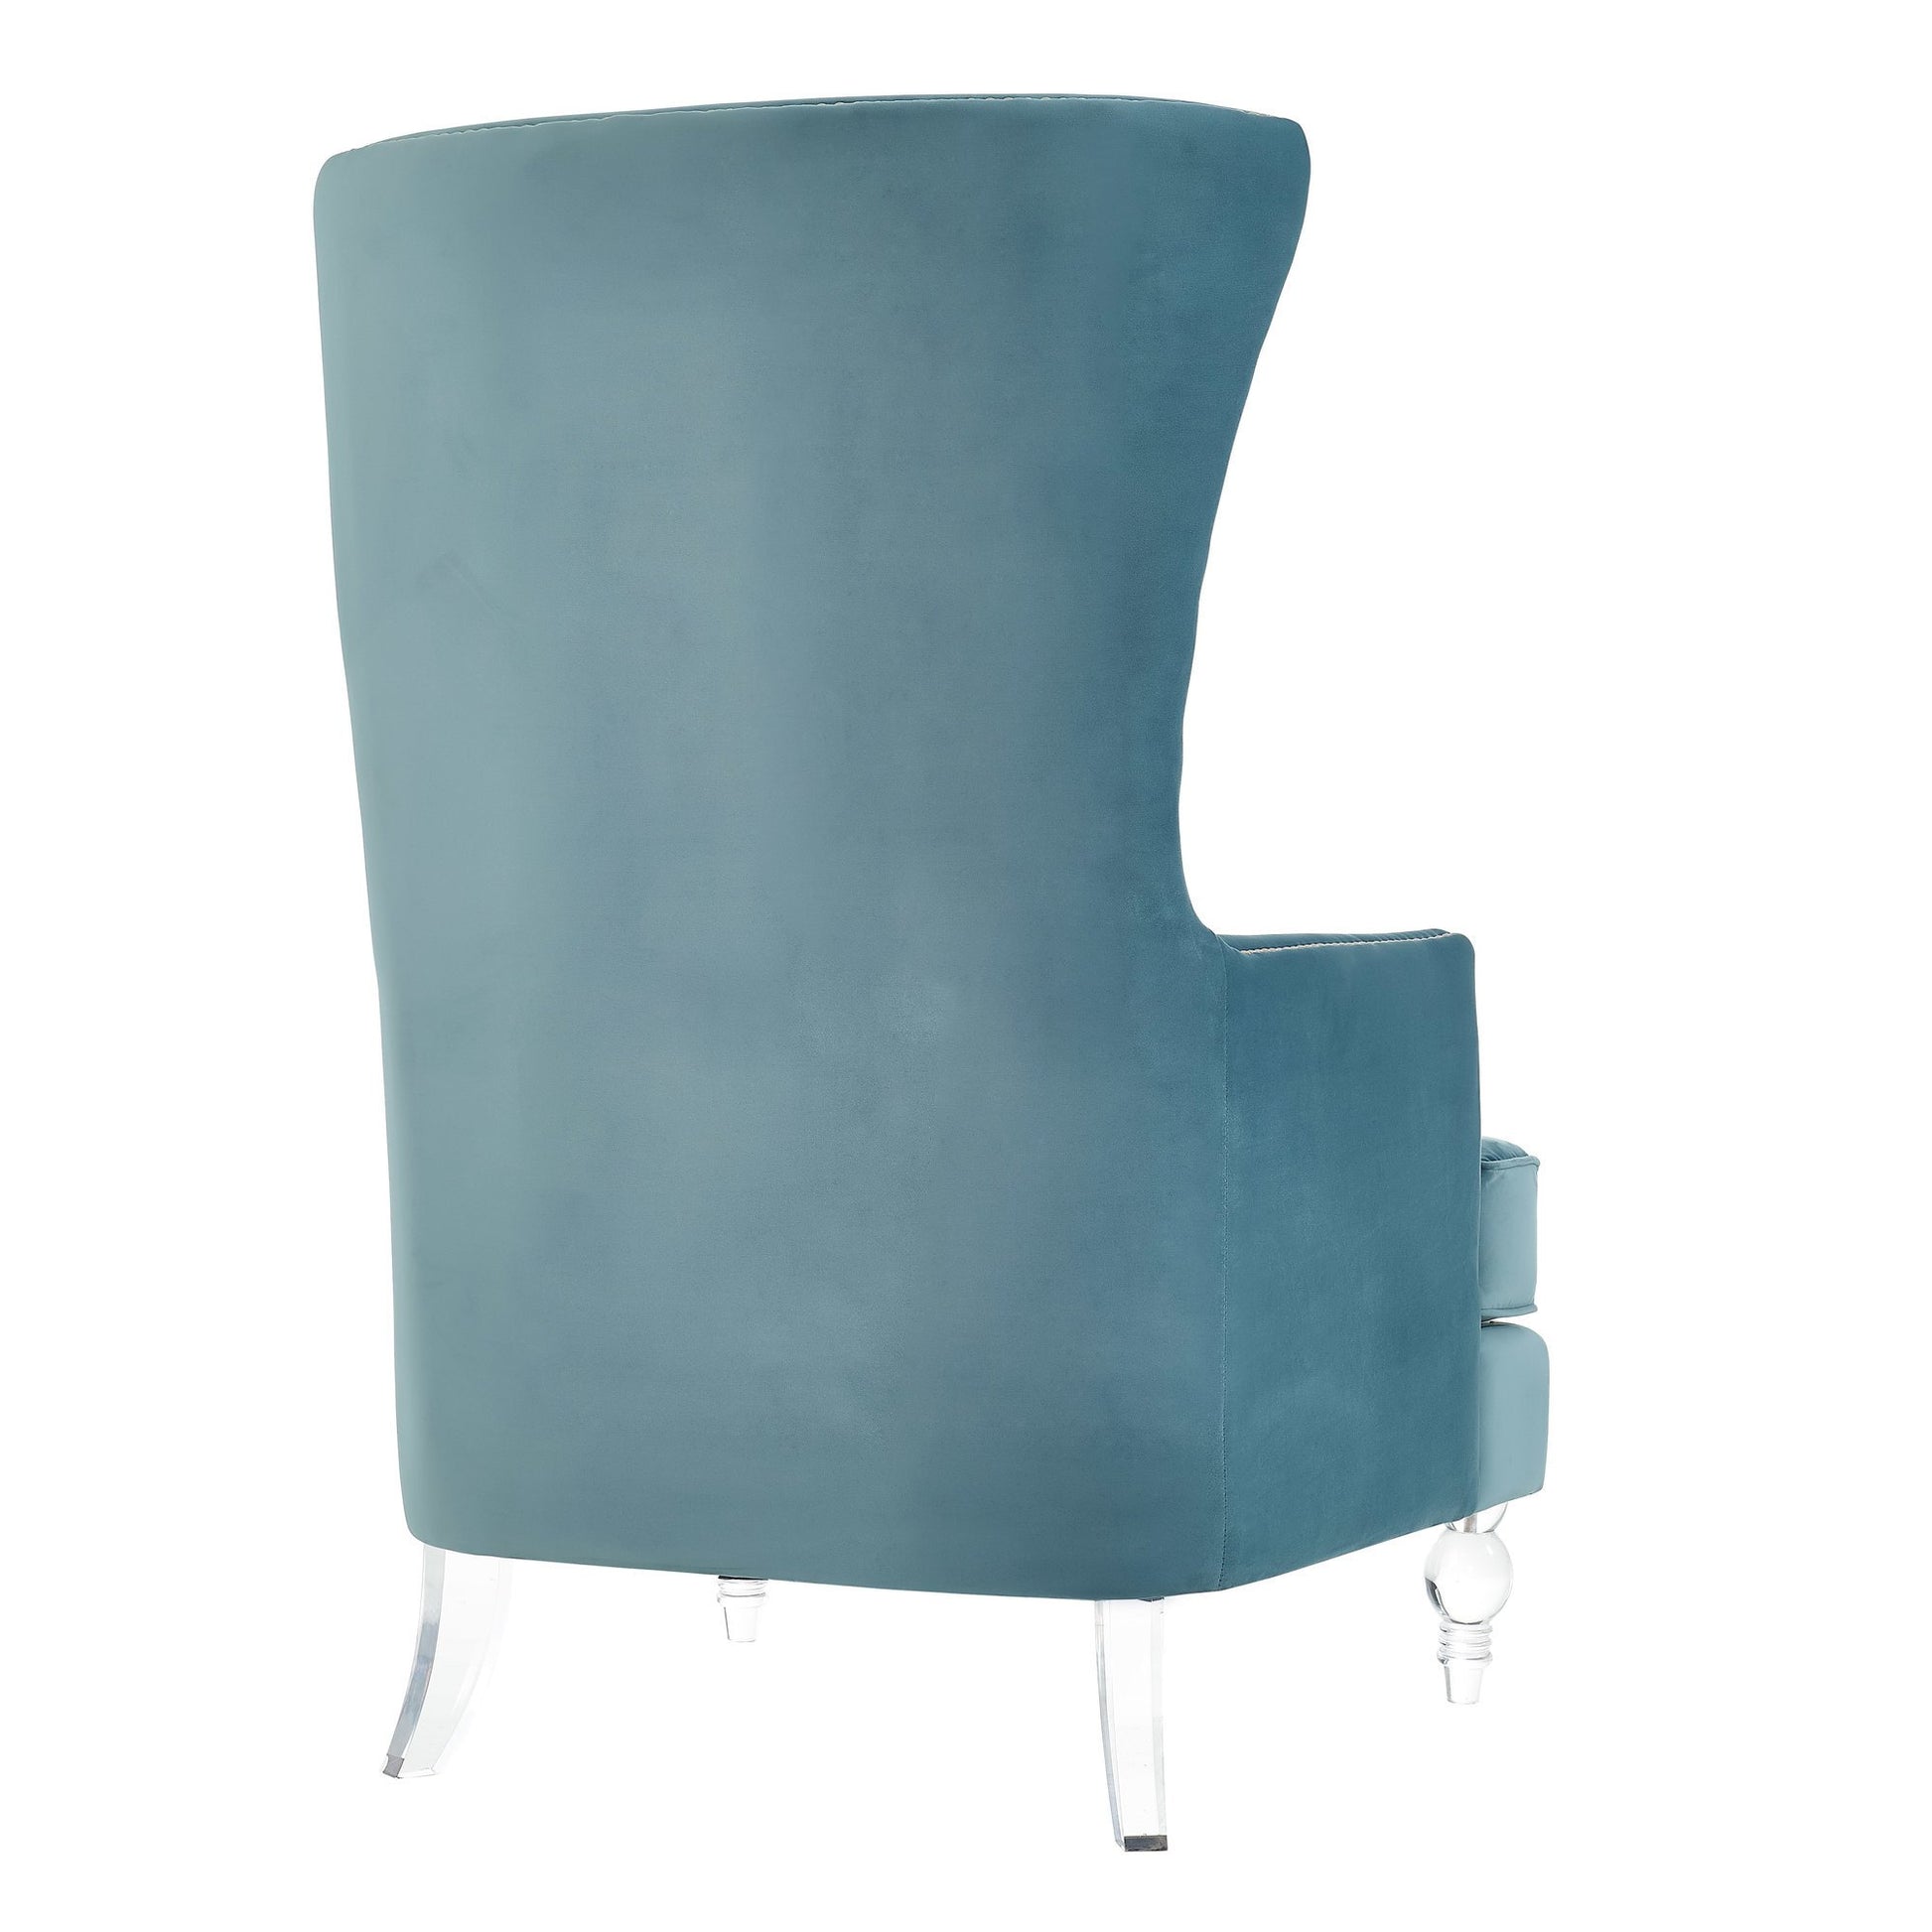 Sarah Sea Blue Velvet Armchair with Lucite Legs - living-essentials